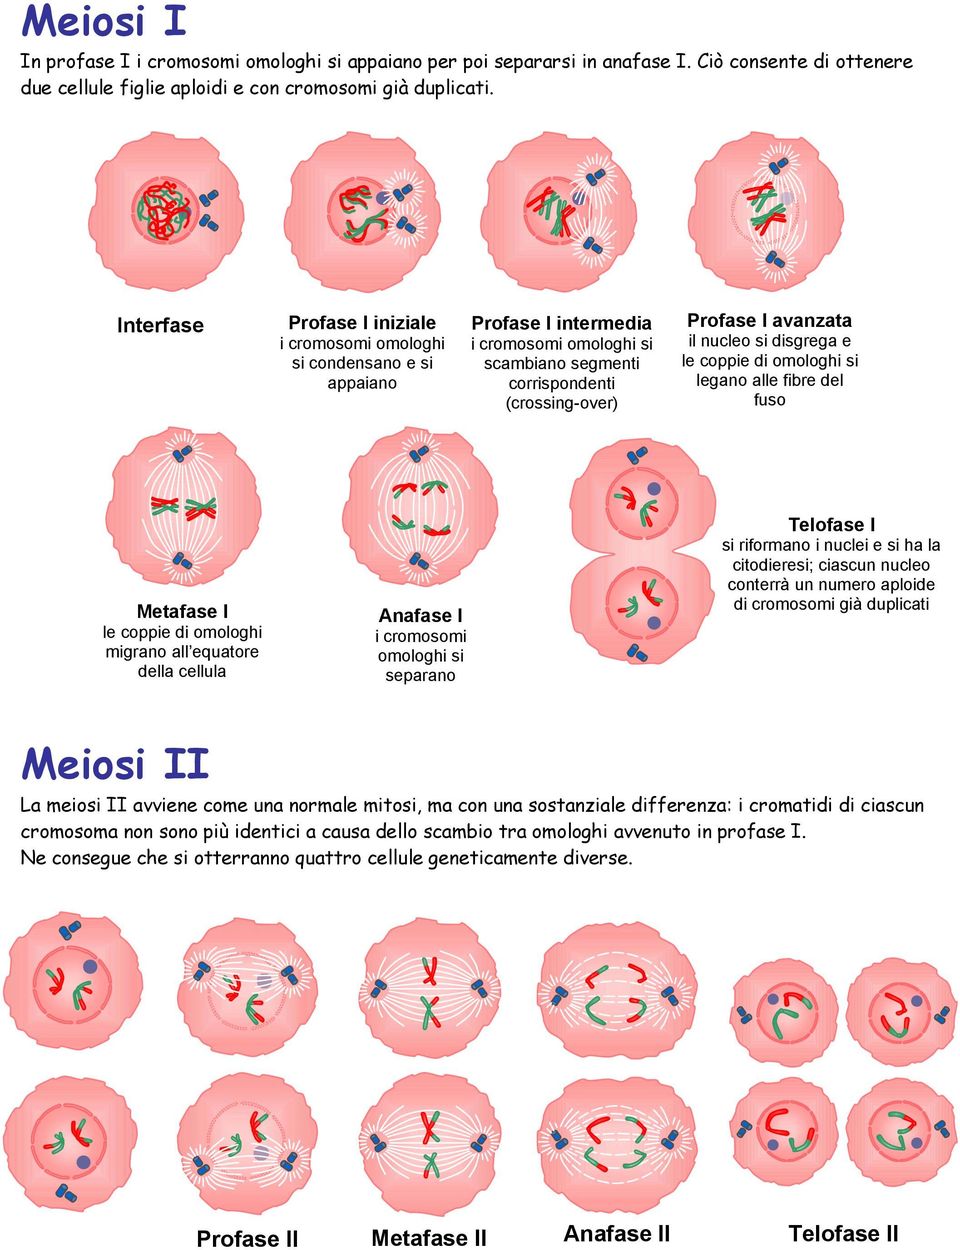 nucleo si disgrega e le coppie di omologhi si legano alle fibre del fuso Metafase I le coppie di omologhi migrano all equatore della cellula Anafase I i cromosomi omologhi si separano Telofase I si